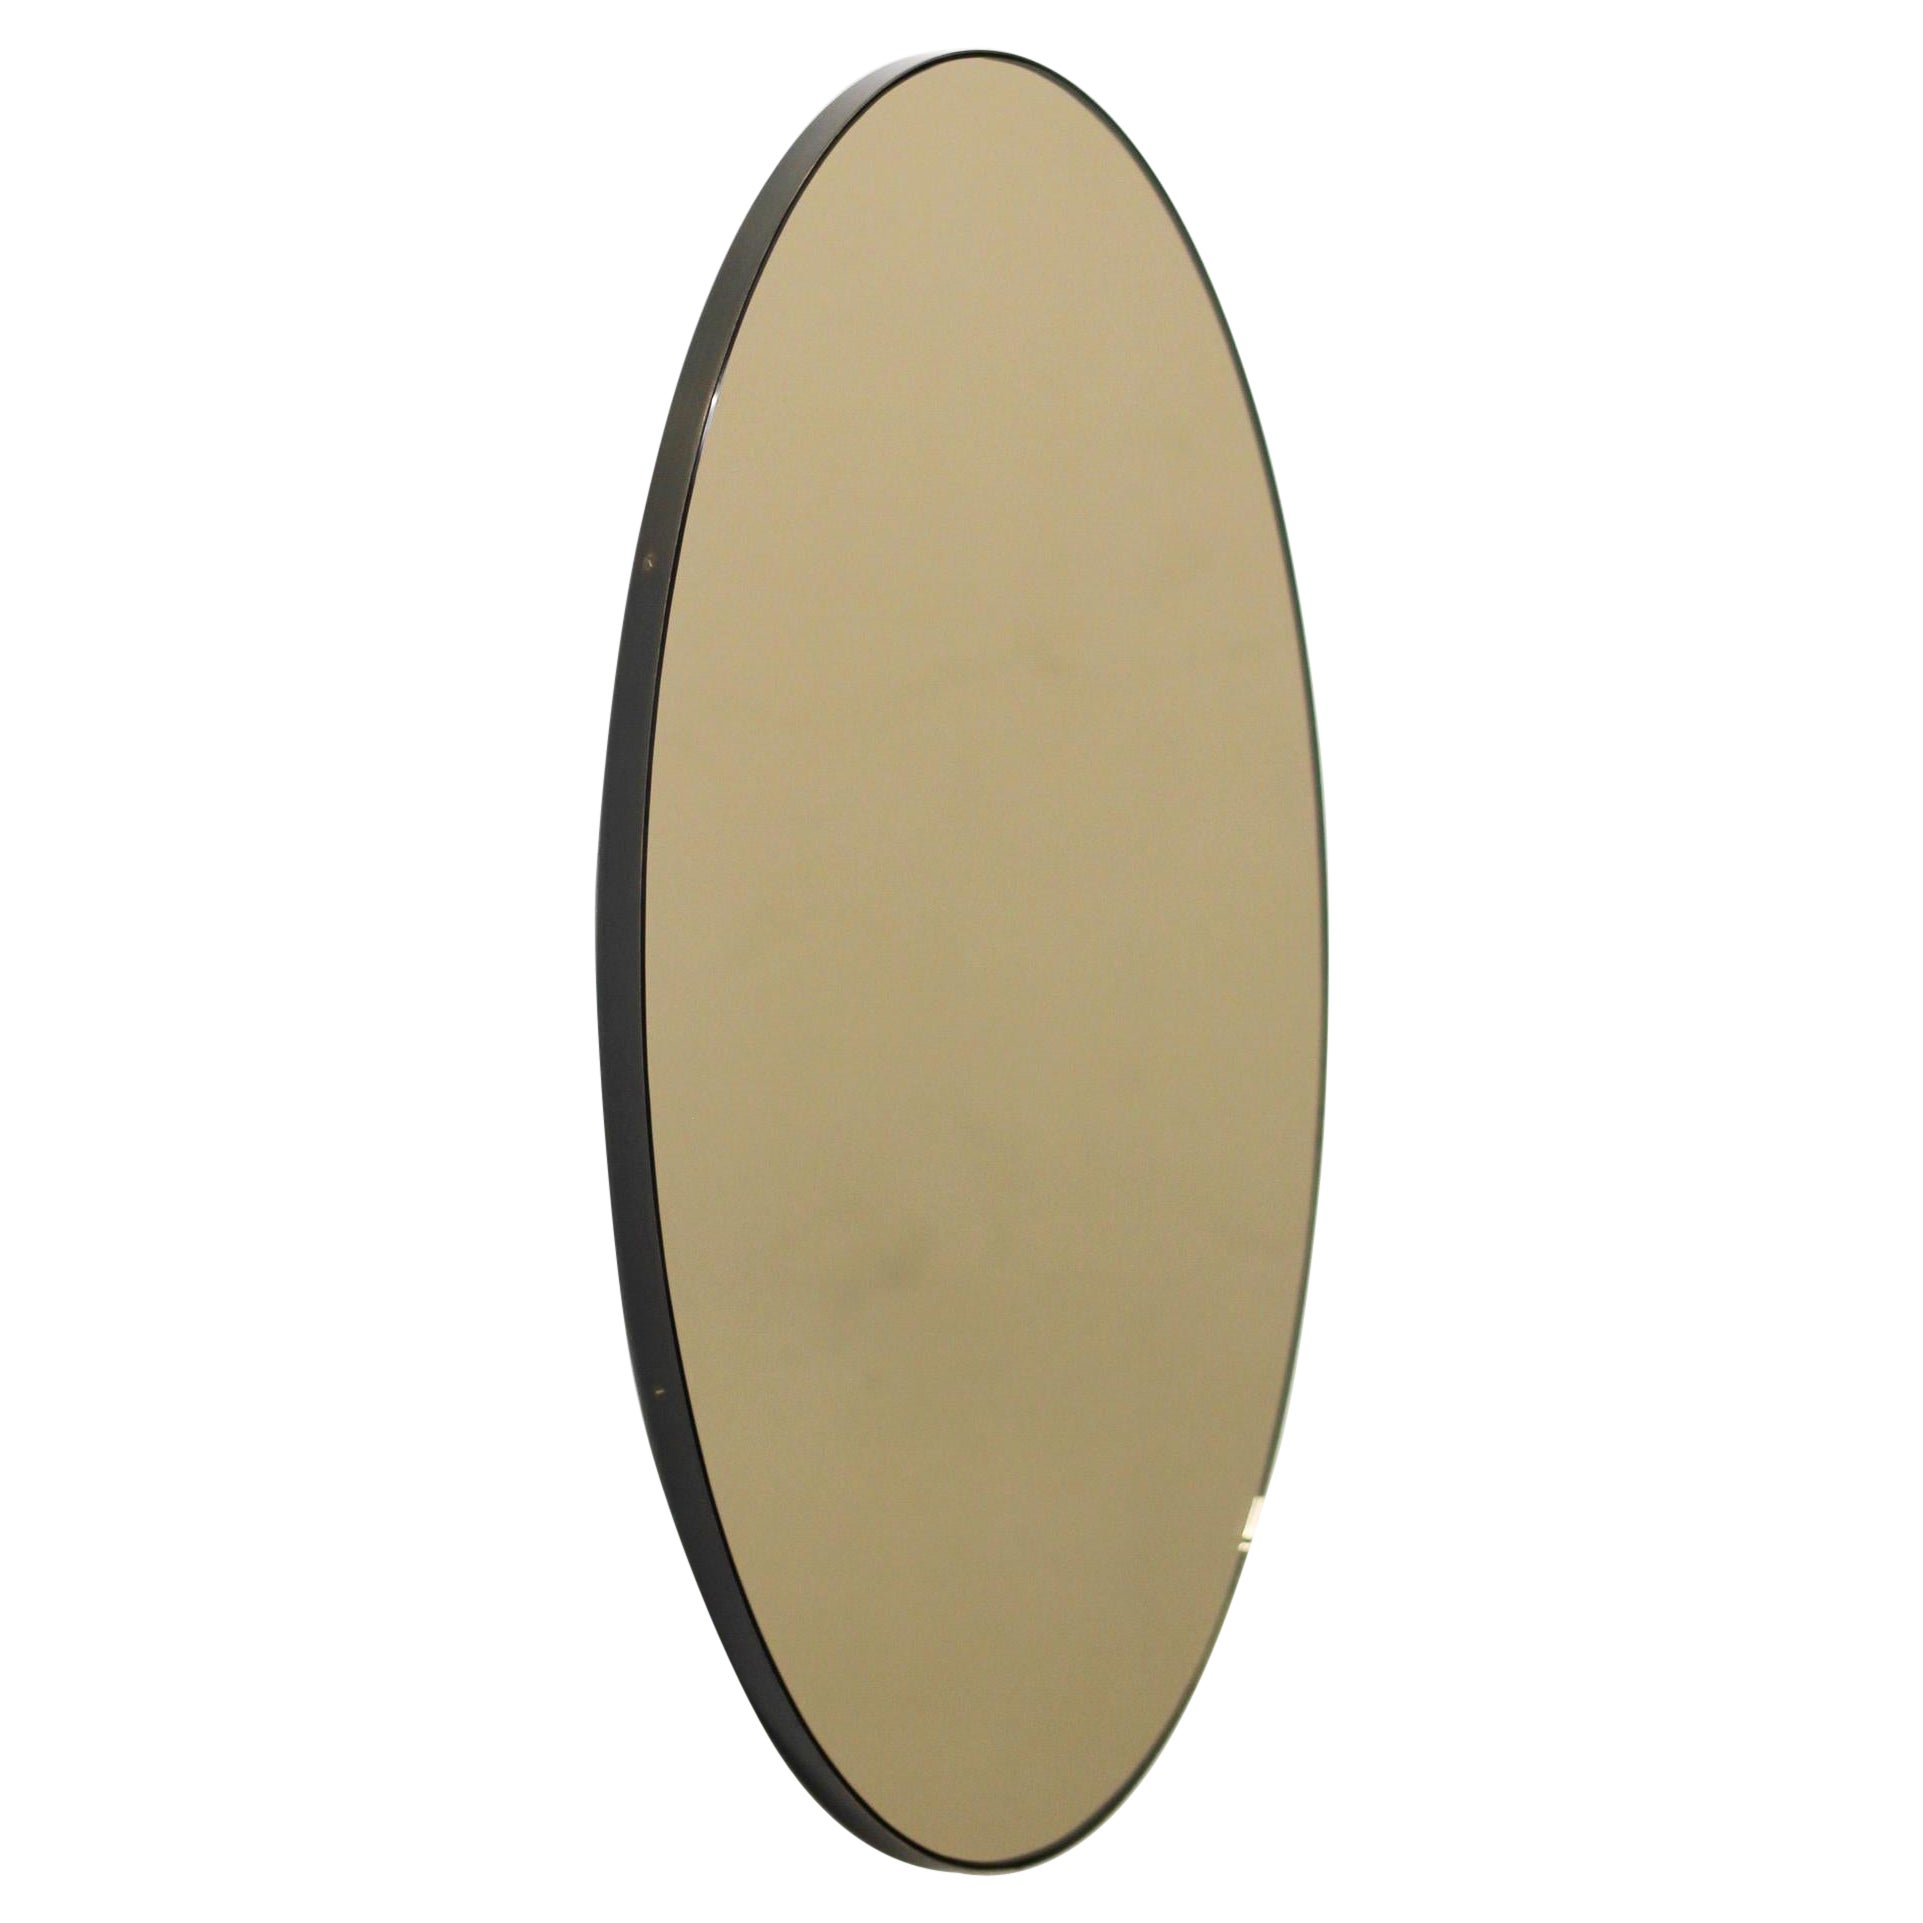 Ovalis Oval Bronze getönter zeitgenössischer Spiegel mit Patina-Rahmen, XL